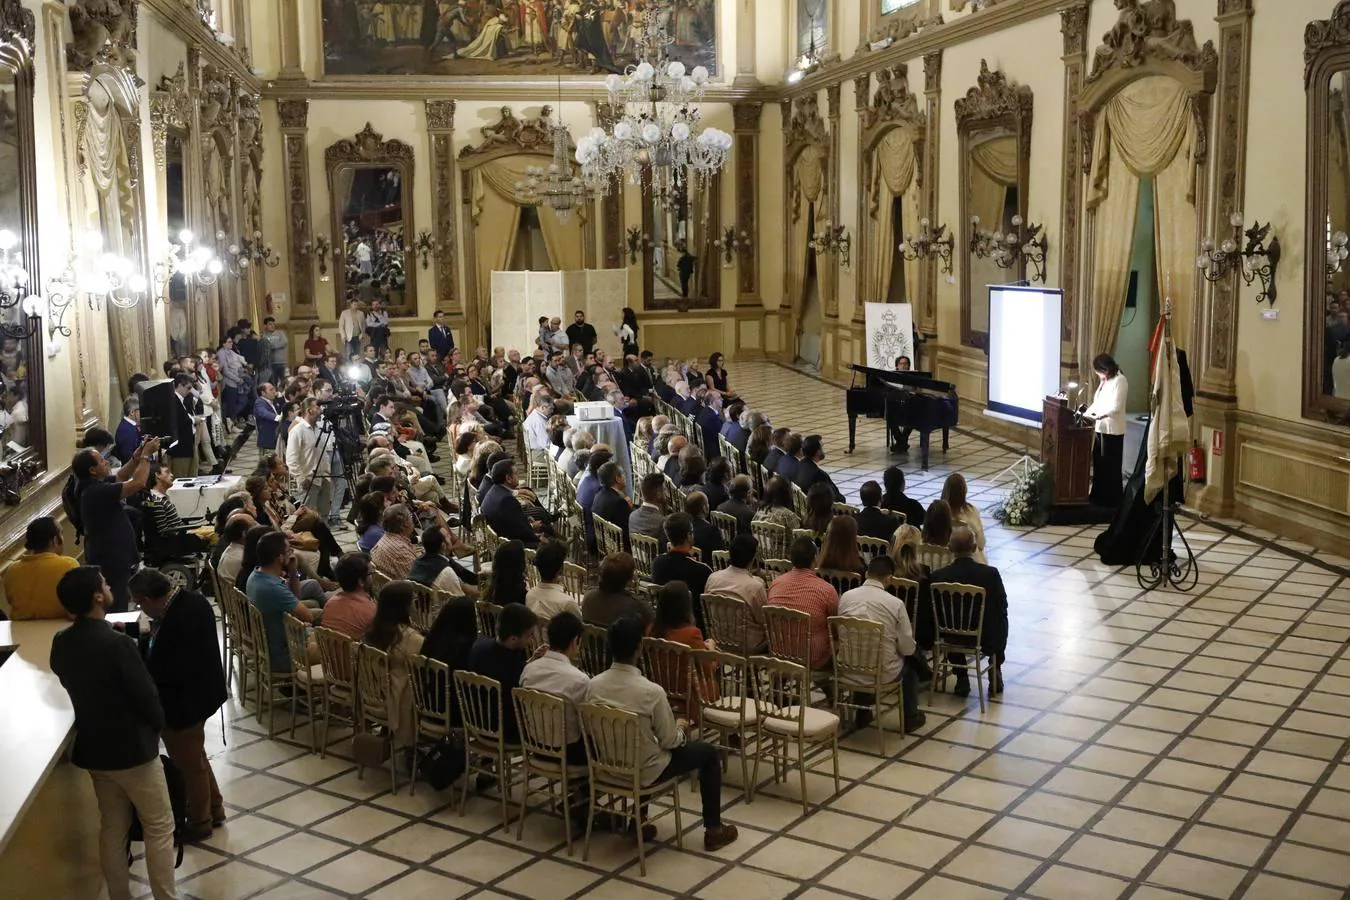 La presentación del cartel y los actos de la coronación de la Virgen de la Paz de Córdoba, en imágenes